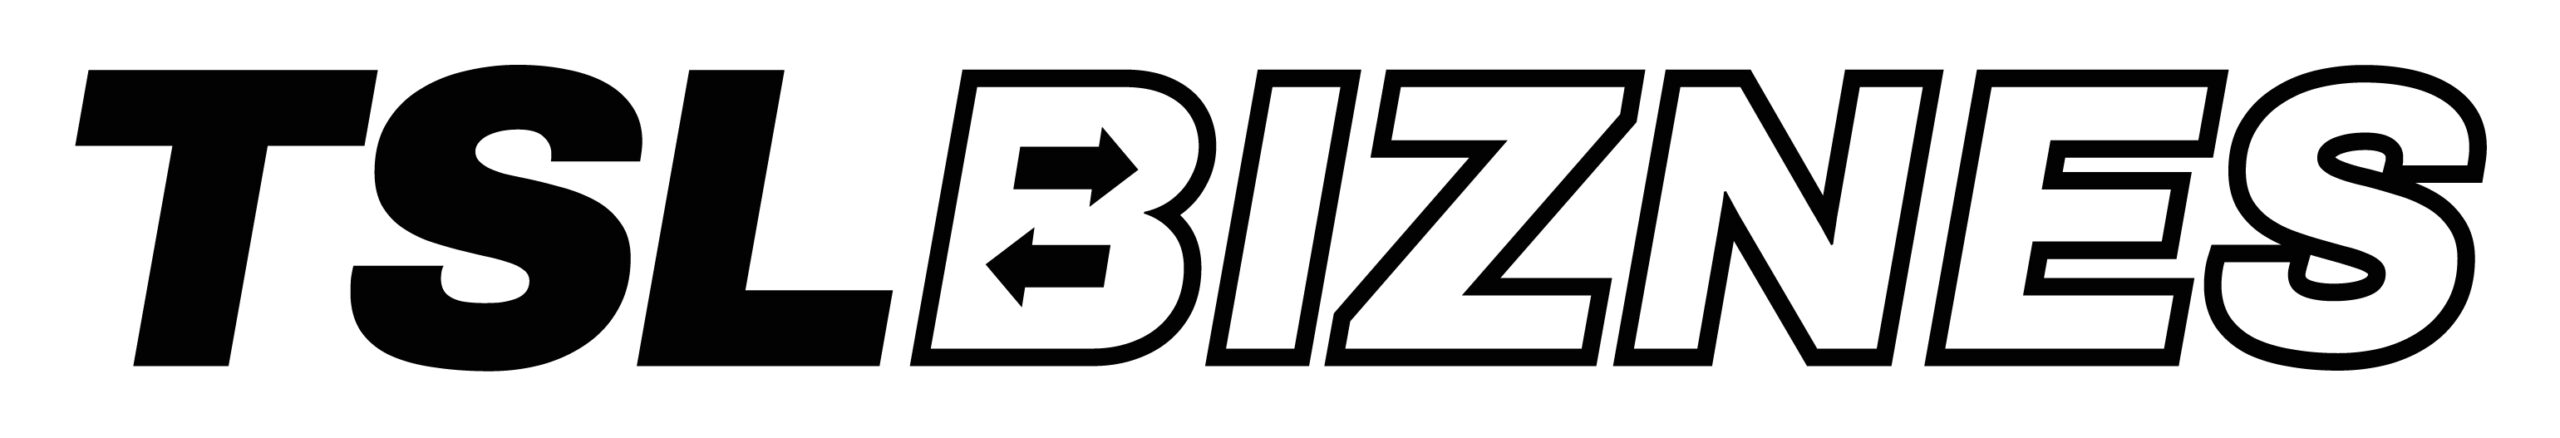 TSL BIZNES logo poziome czarne rgb scaled